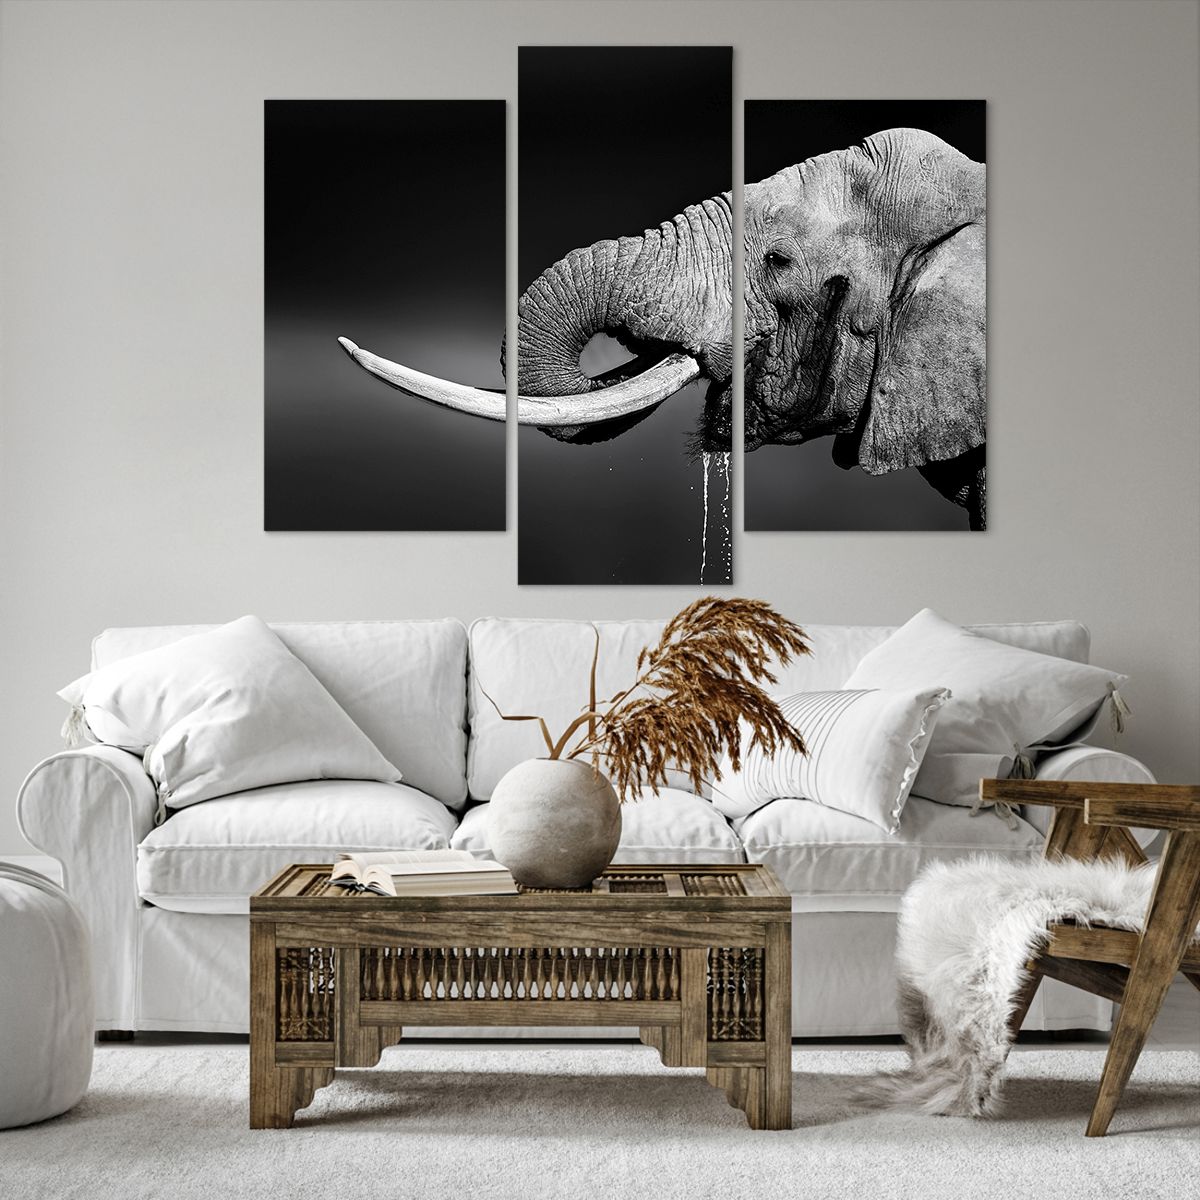 Obrazy na płótnie Zwierzęta, Obrazy na płótnie Słoń, Obrazy na płótnie Afryka, Obrazy na płótnie Natura, Obrazy na płótnie Czarno-Biały